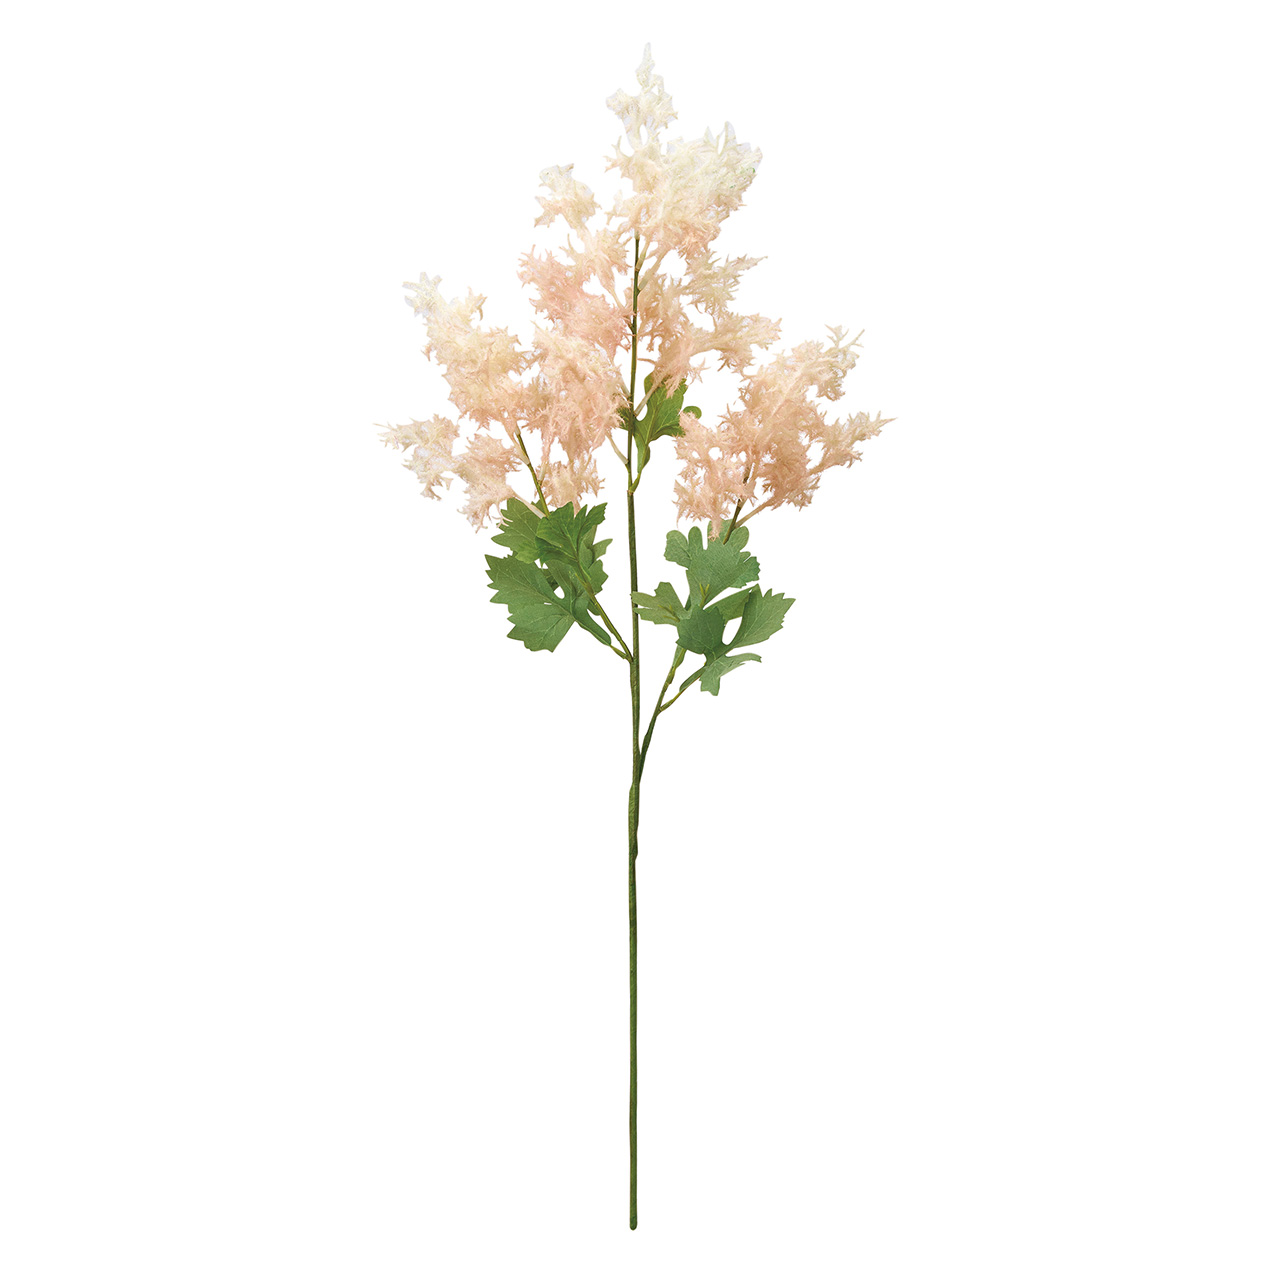 マイフラ】 通販/MAGIQ リアンスモークツリー ライトピンク アーティフィシャルフラワー 造花 すすき パンパス  FM004671(花房丈18～24×長さ 約77cm ライトピンク): MAGIQ(アーティフィシャルフラワー 造花 )/全国にMAGIQ、花器、花資材などをお届けします。